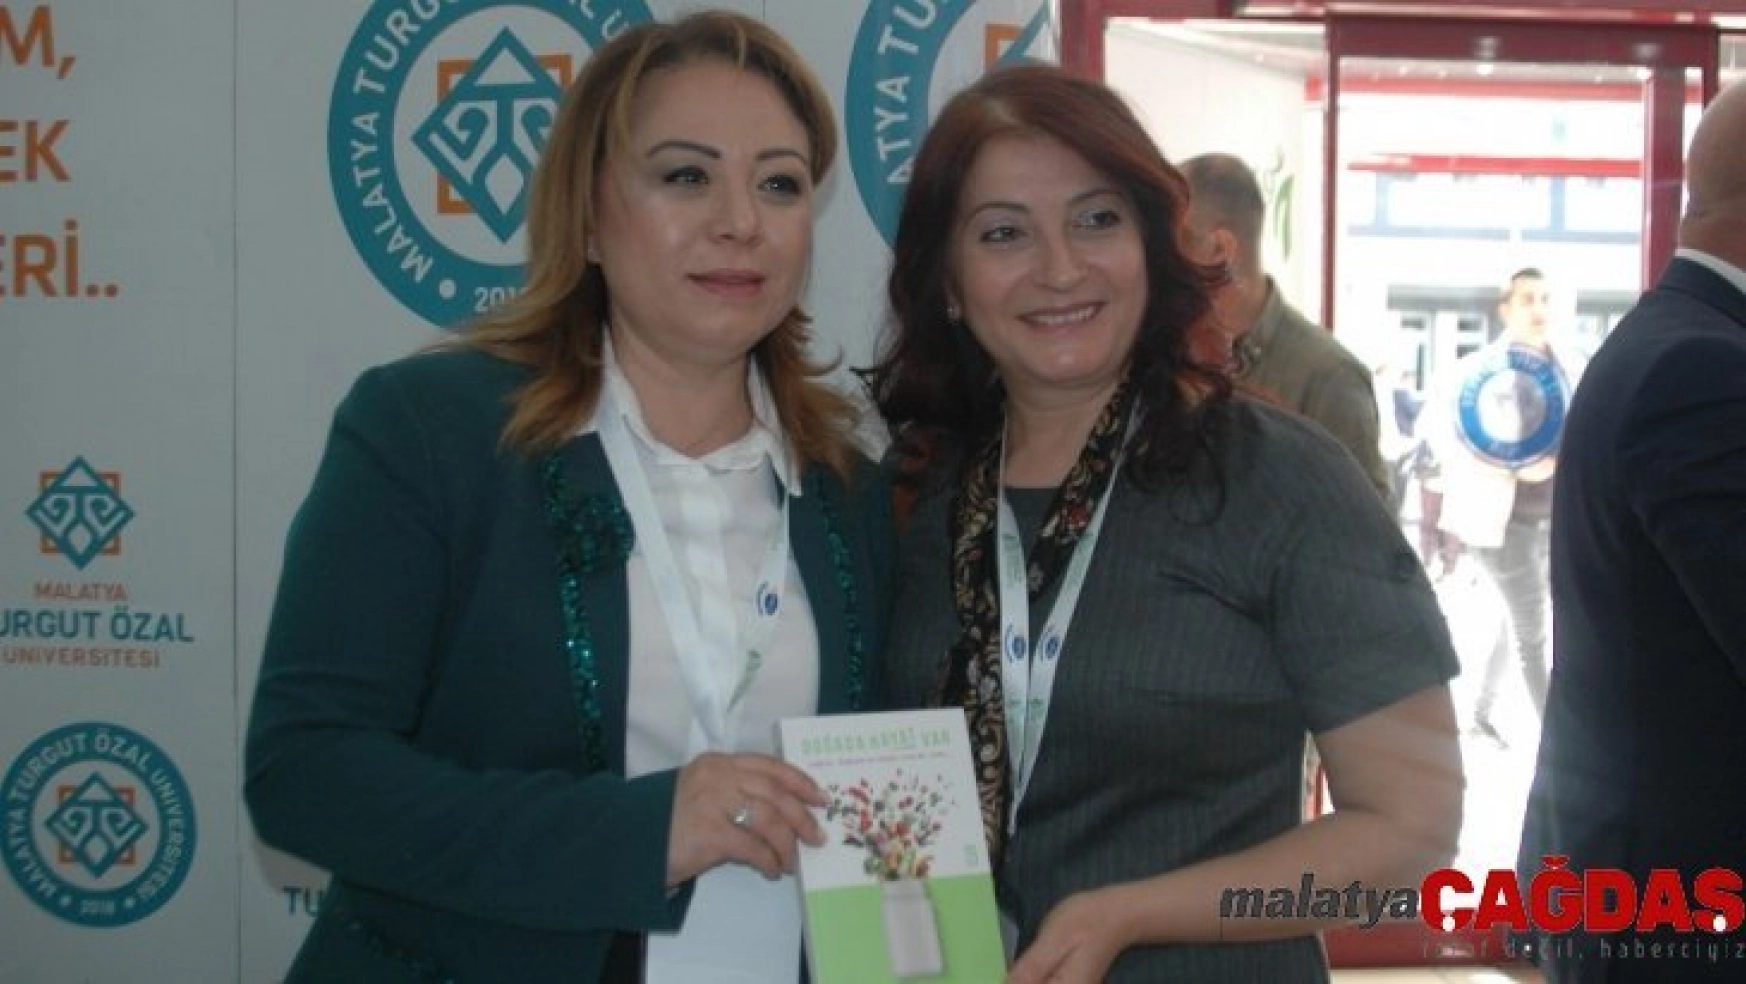 Malatya Turgut Özal Üniversitesi Rektörü Prof. Dr. Karabulut 'Doğada Hayat Var' dedi